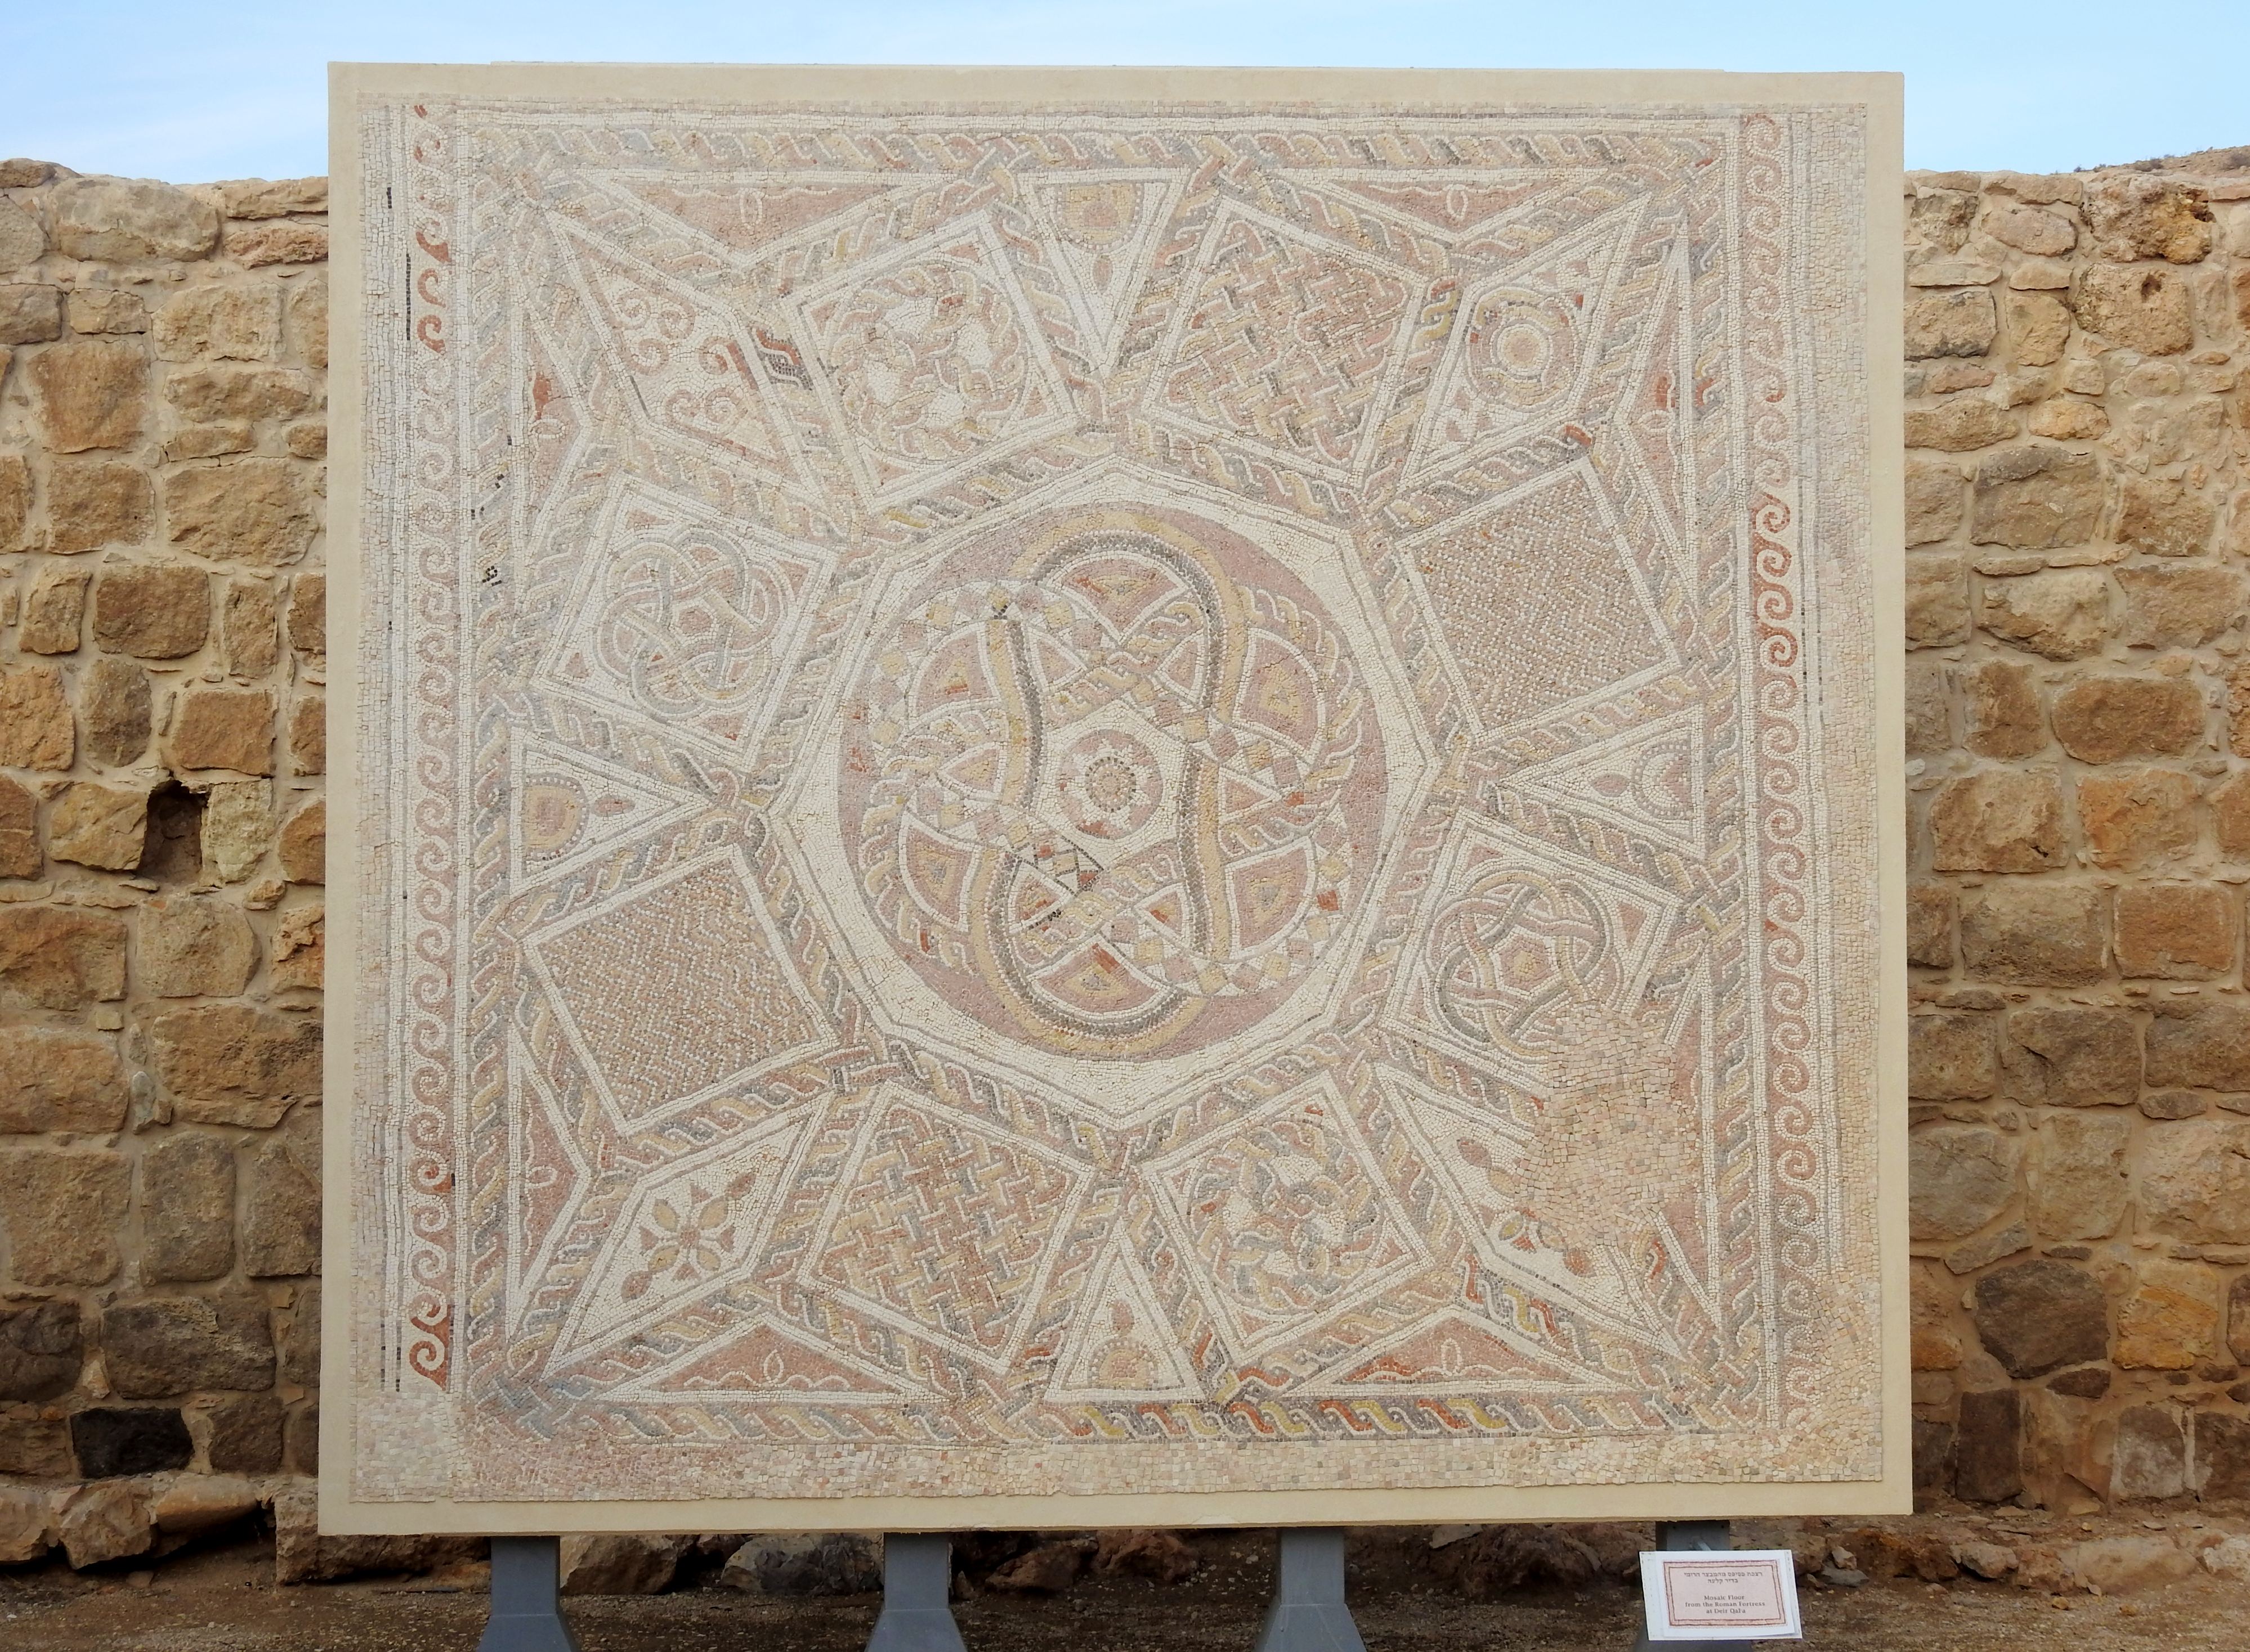 The Roman fortress floor from Deir Qal'a